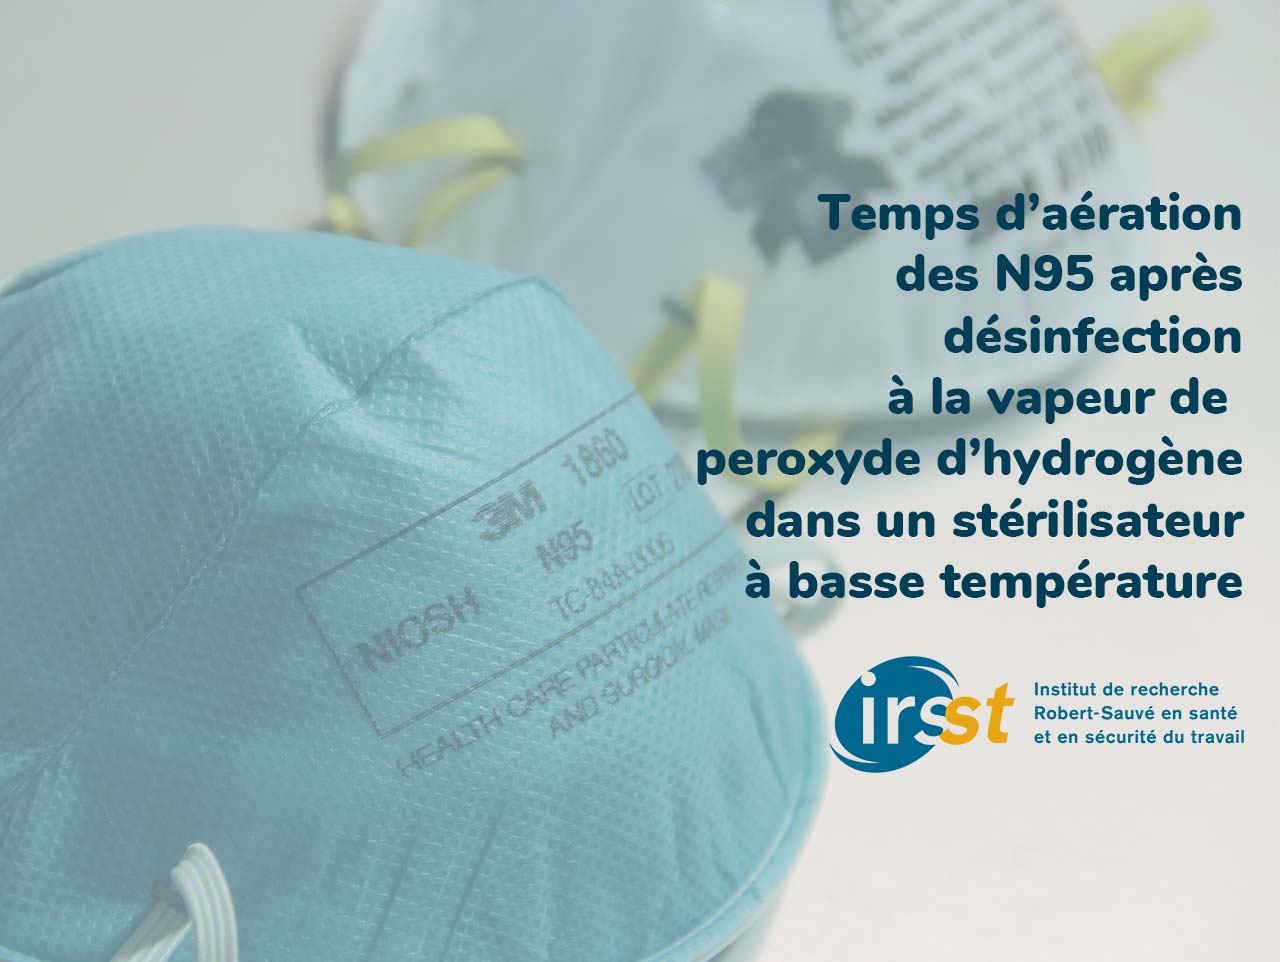 Recommandation sur le temps d’aération des appareils de protection respiratoire de type N95 après désinfection à la vapeur de peroxyde d’hydrogène dans un stérilisateur à basse température